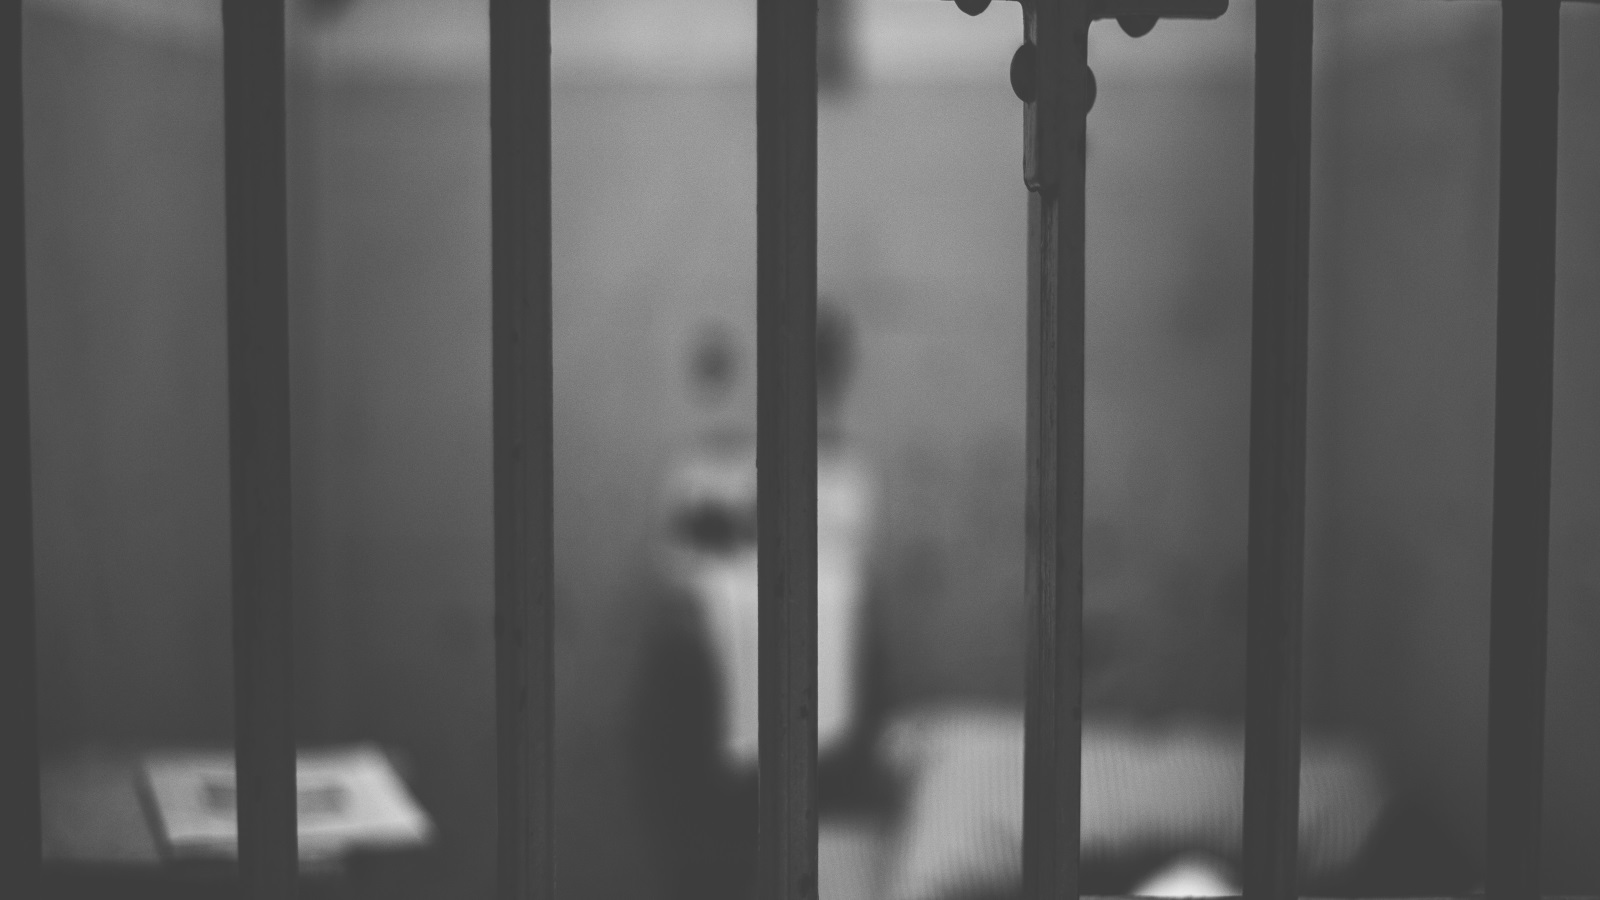 التعذيب والظلم الصريح لم يقف عليه السعيدي وهو يزور السجون السعودية، فليعلم أن الظلم والتعذيب لا يُدخل إليه من باب كبار الزوار ومشايخ الداخلية، وإنما من الباب الخلفي الذي يعرف طريقه المصلحون